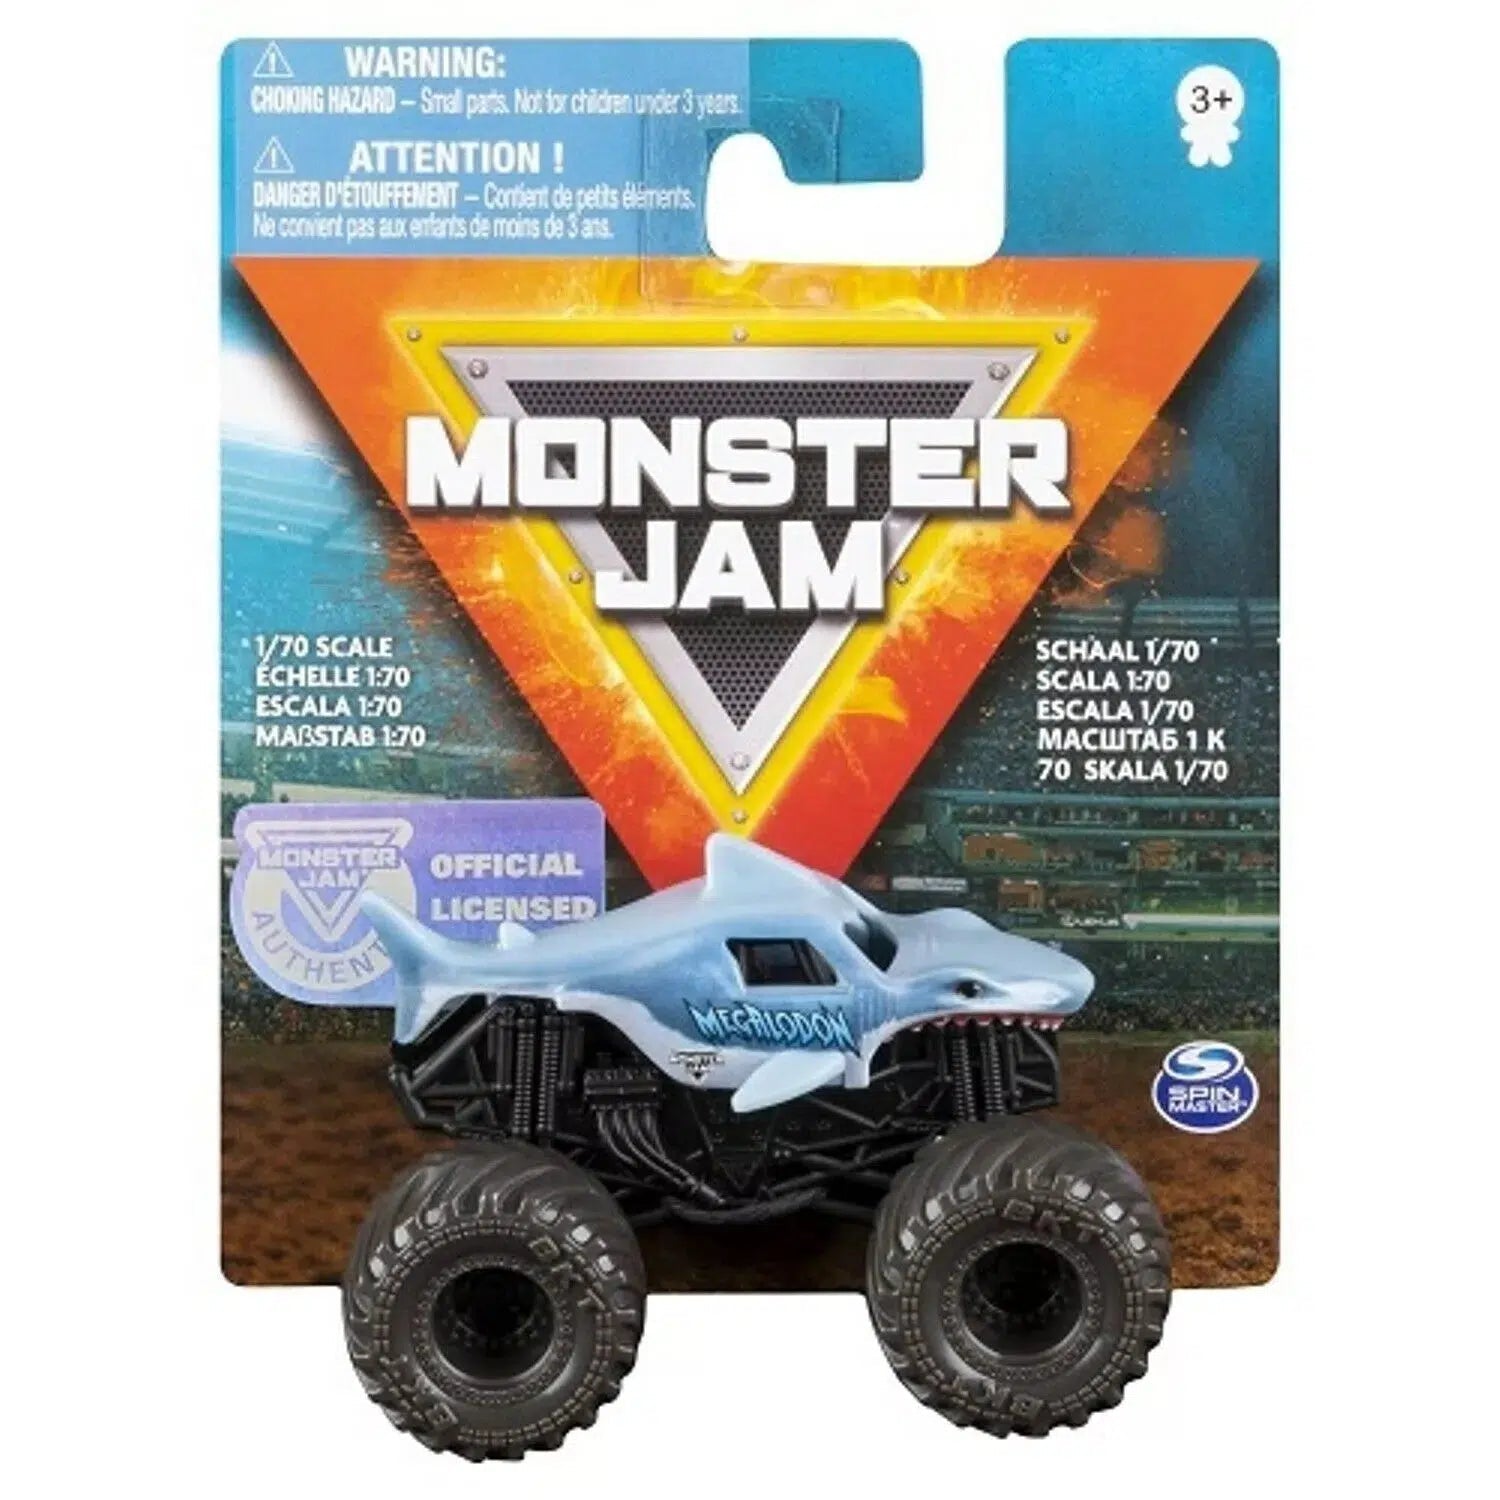 Spin Master-Monster Jam 1:70 Scale Monster Truck-20137351-Megalodon-Legacy Toys